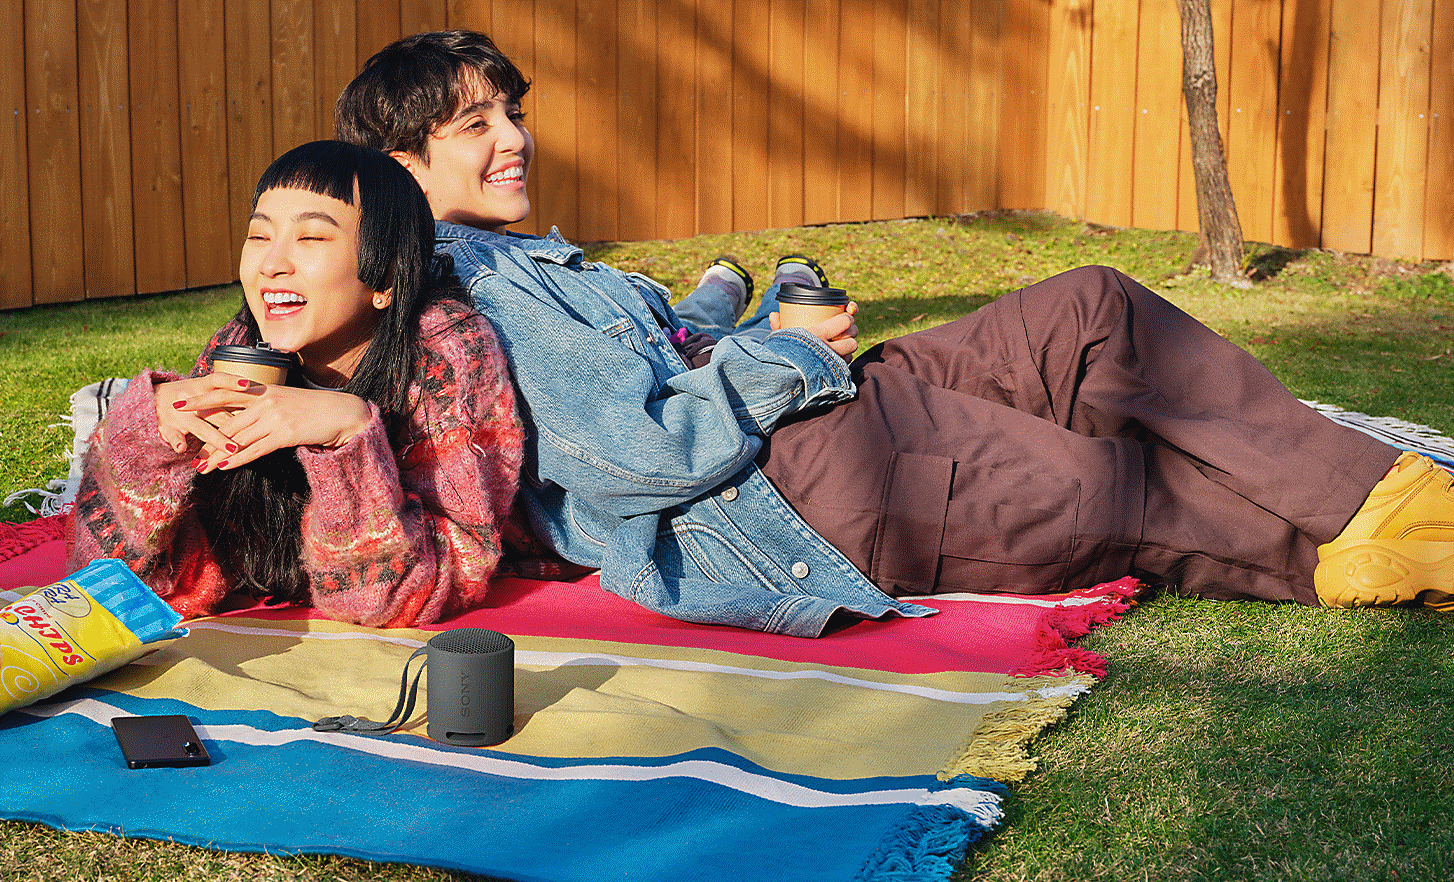 Slika na kojoj dvoje ljudi leži jedno pored drugog na ćebetu za piknik u bašti i sluša crni zvučnik SRS-XB100